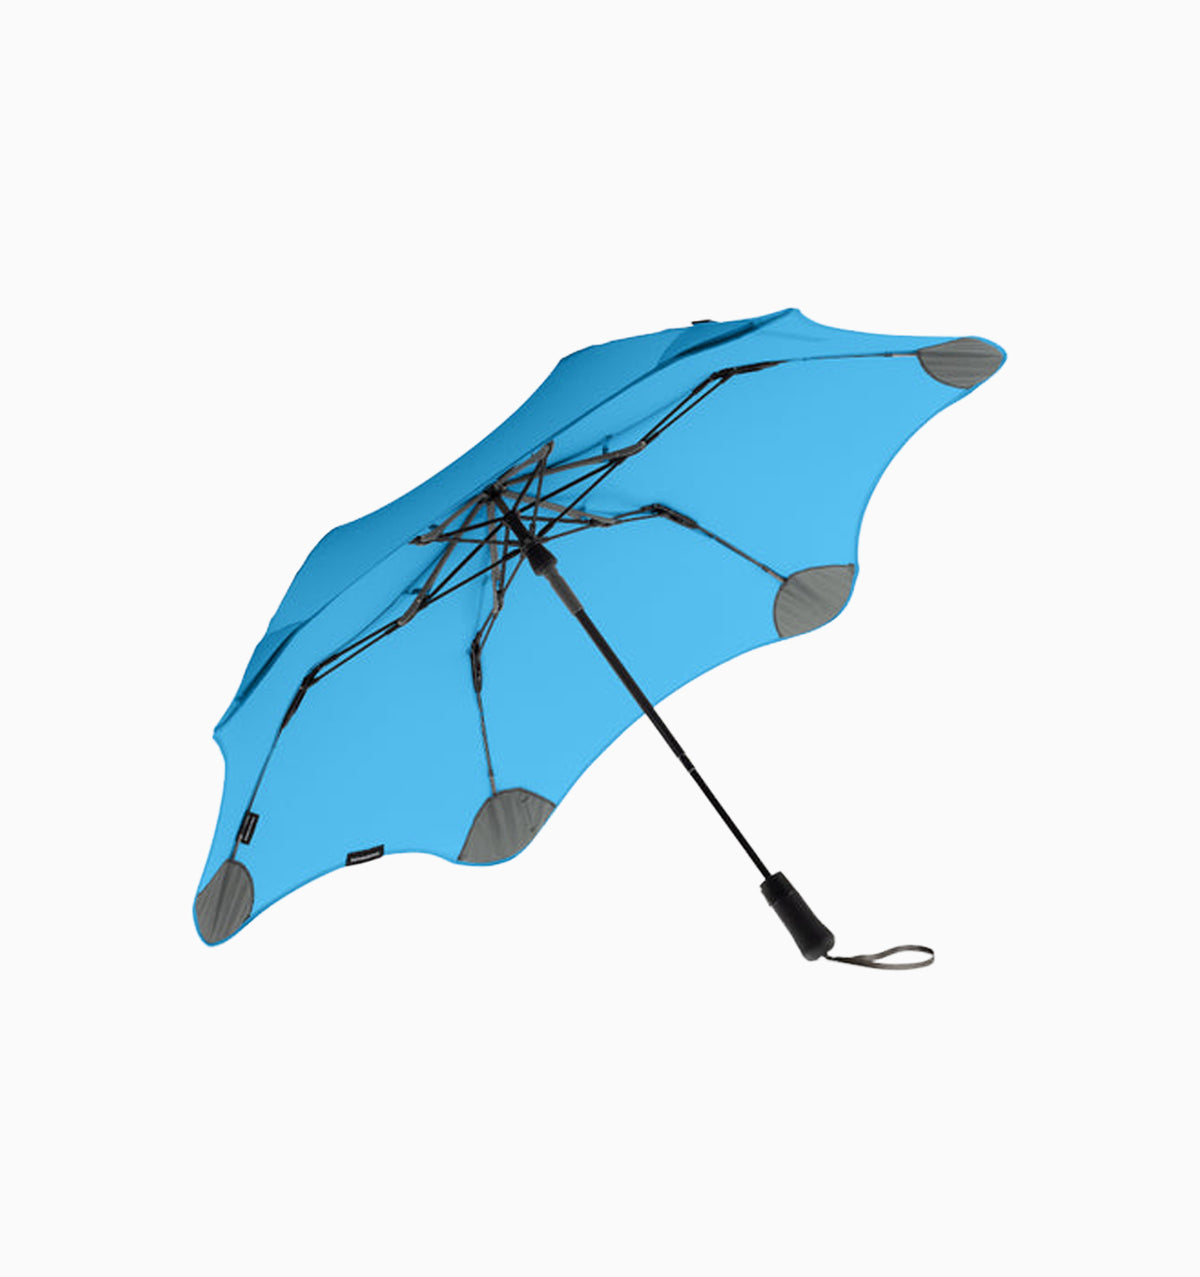 Blunt Metro Umbrella - Blue